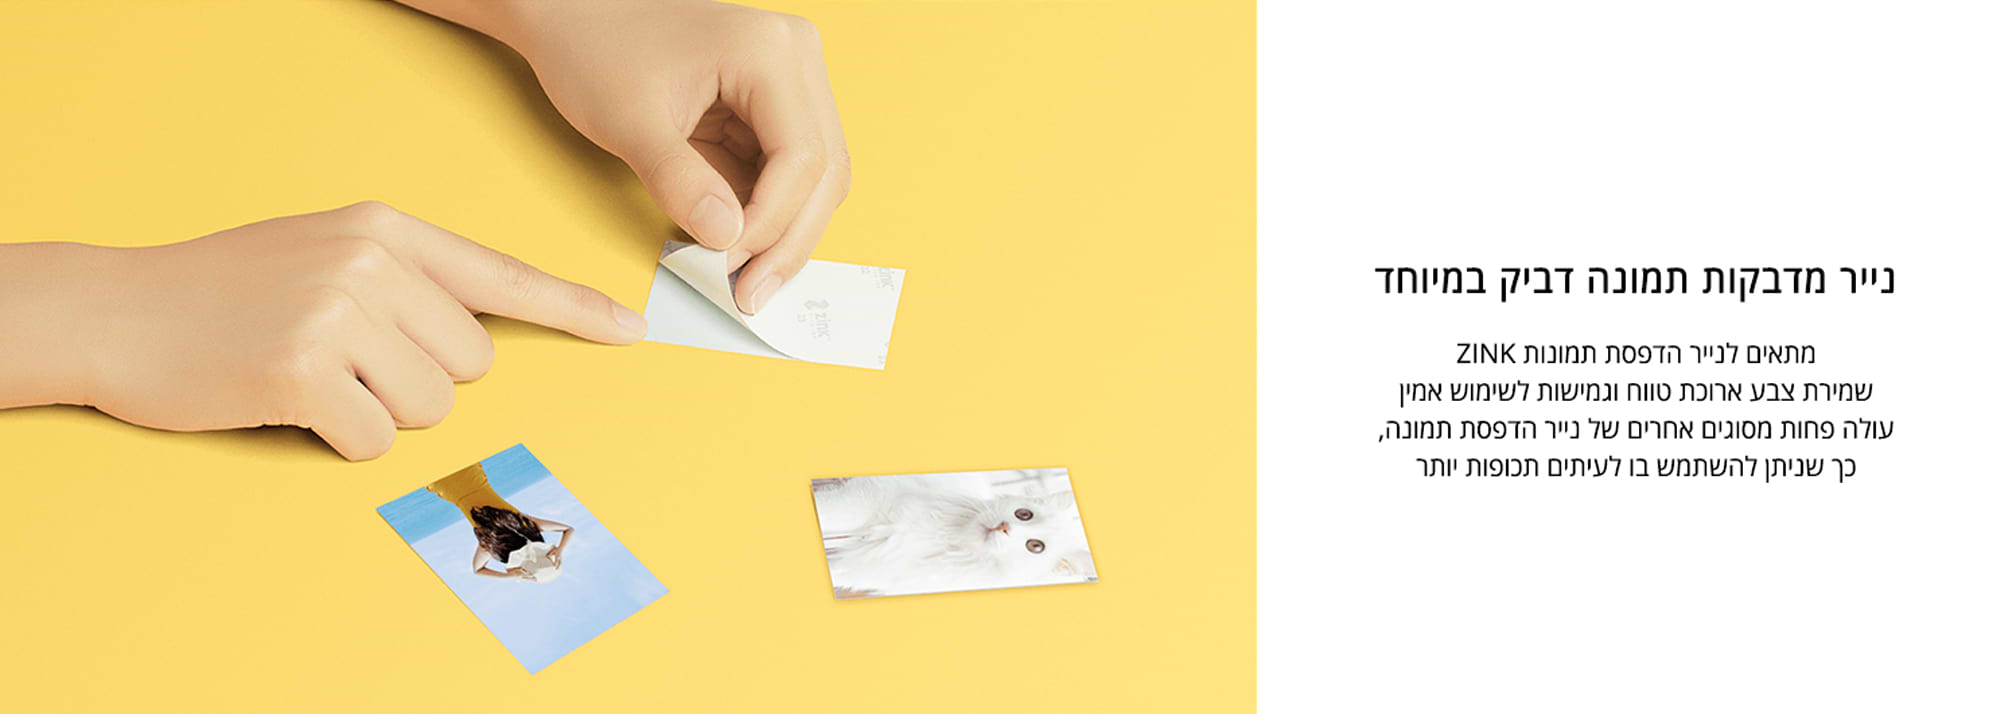 ניירות פוטו דביקות 7.6x5 ס"מ 20 יחידות למדפסת אלחוטית Xiaomi Mi Portable Photo Printer Paper ZINK - צבע לבן